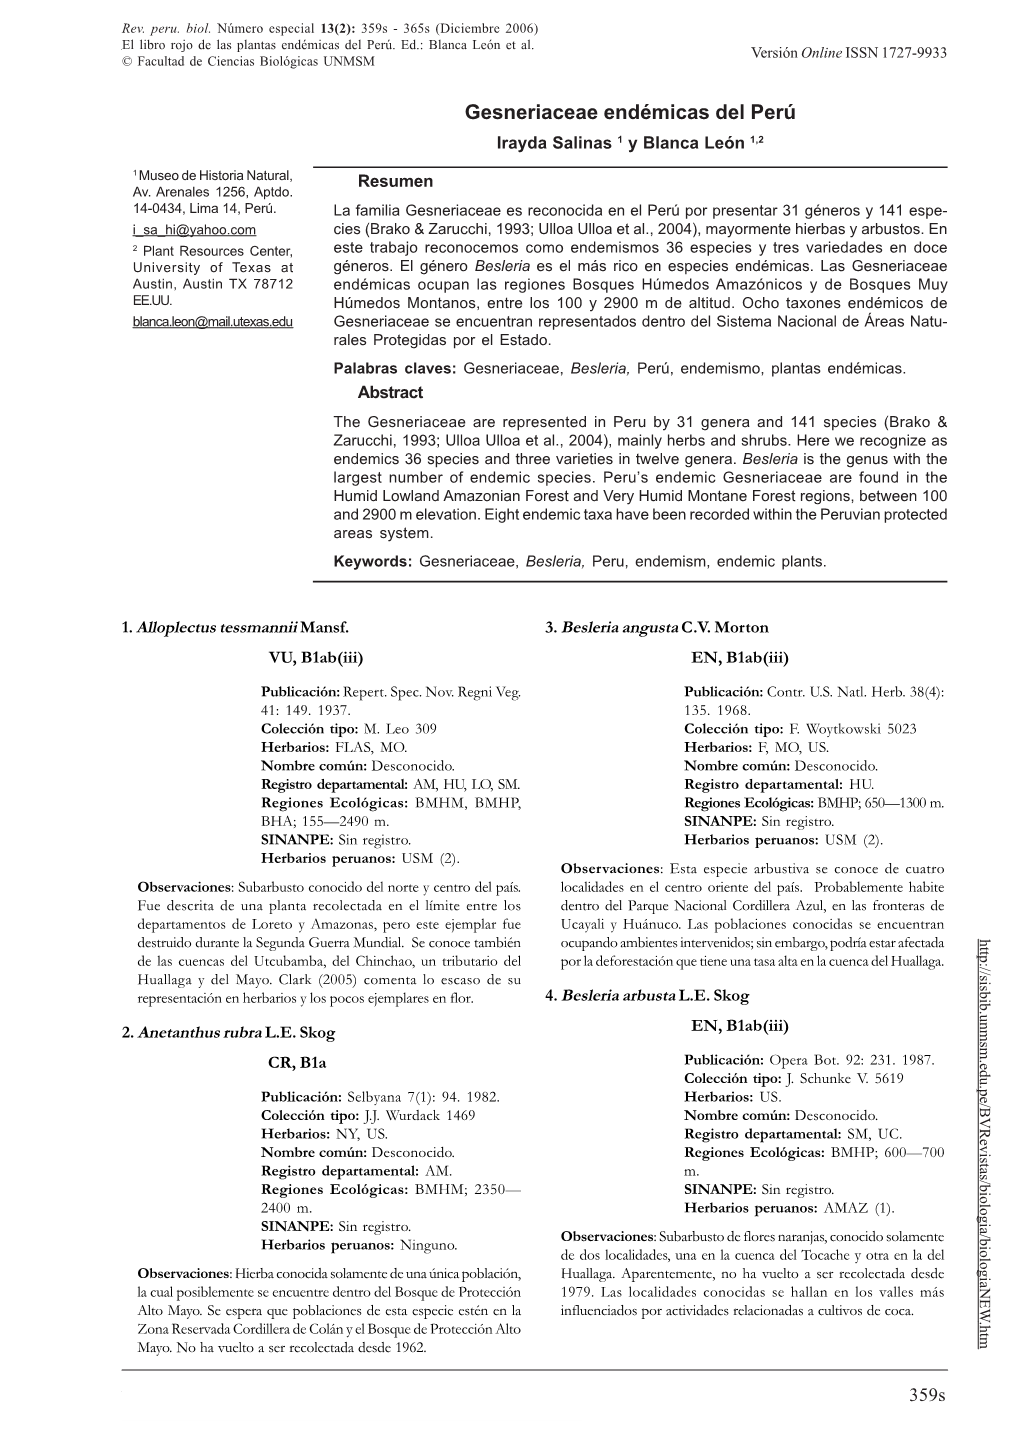 GESNERIACEAE ENDÉMICAS DEL PERÚ Versión Online ISSN 1727-9933 © Facultad De Ciencias Biológicas UNMSM